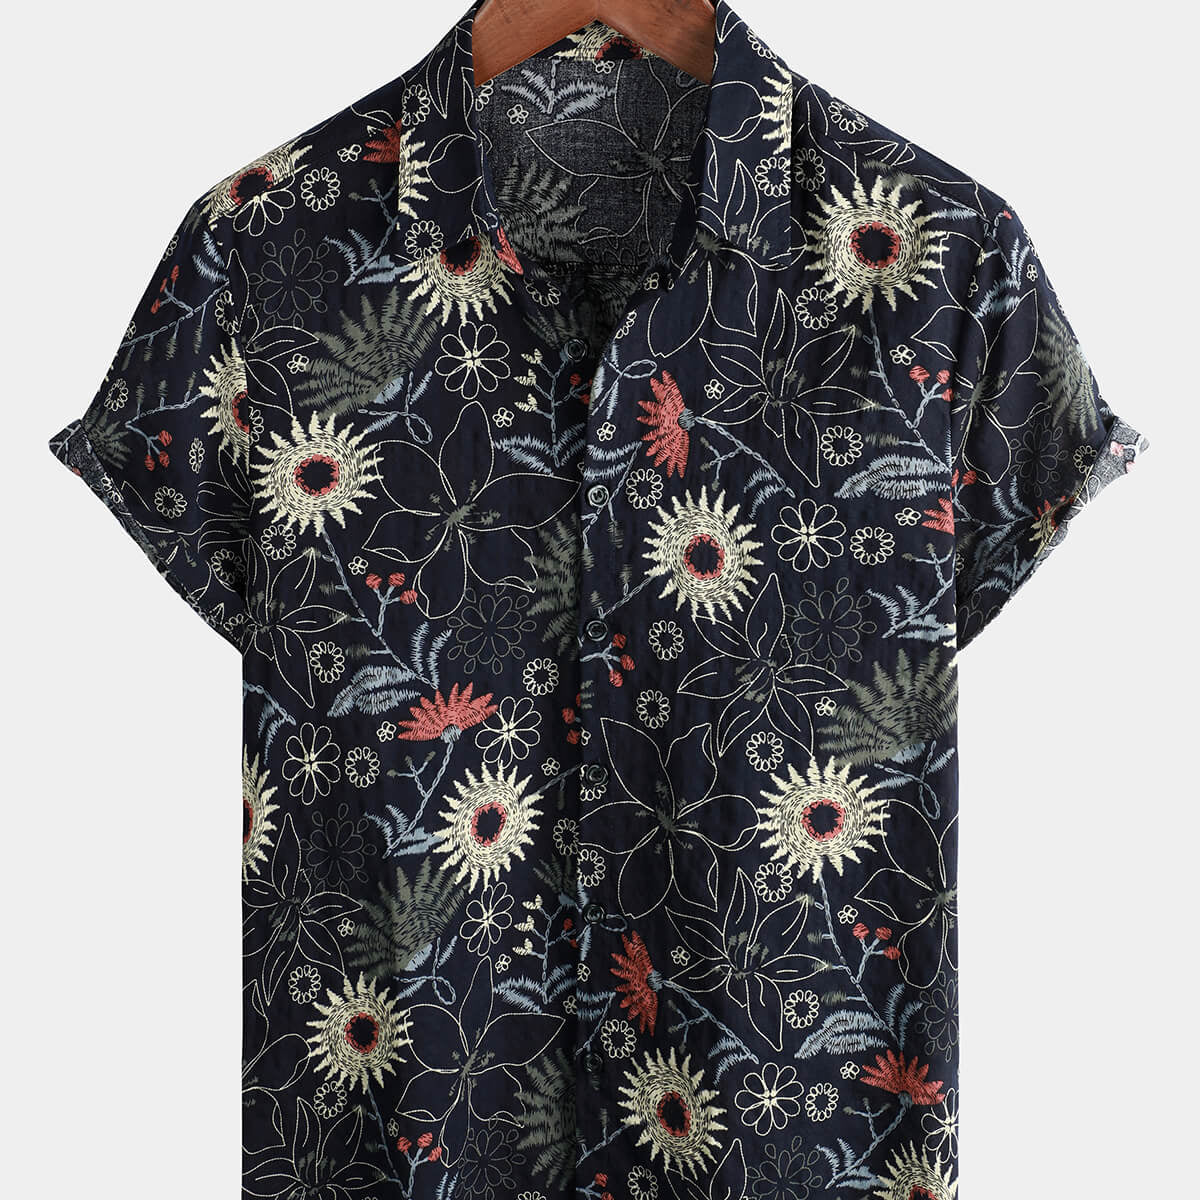 Men's Cotton Sunflower Floral Cruise Beach Summer Holiday Short Sleeve Hawaiian Button Up Shirt